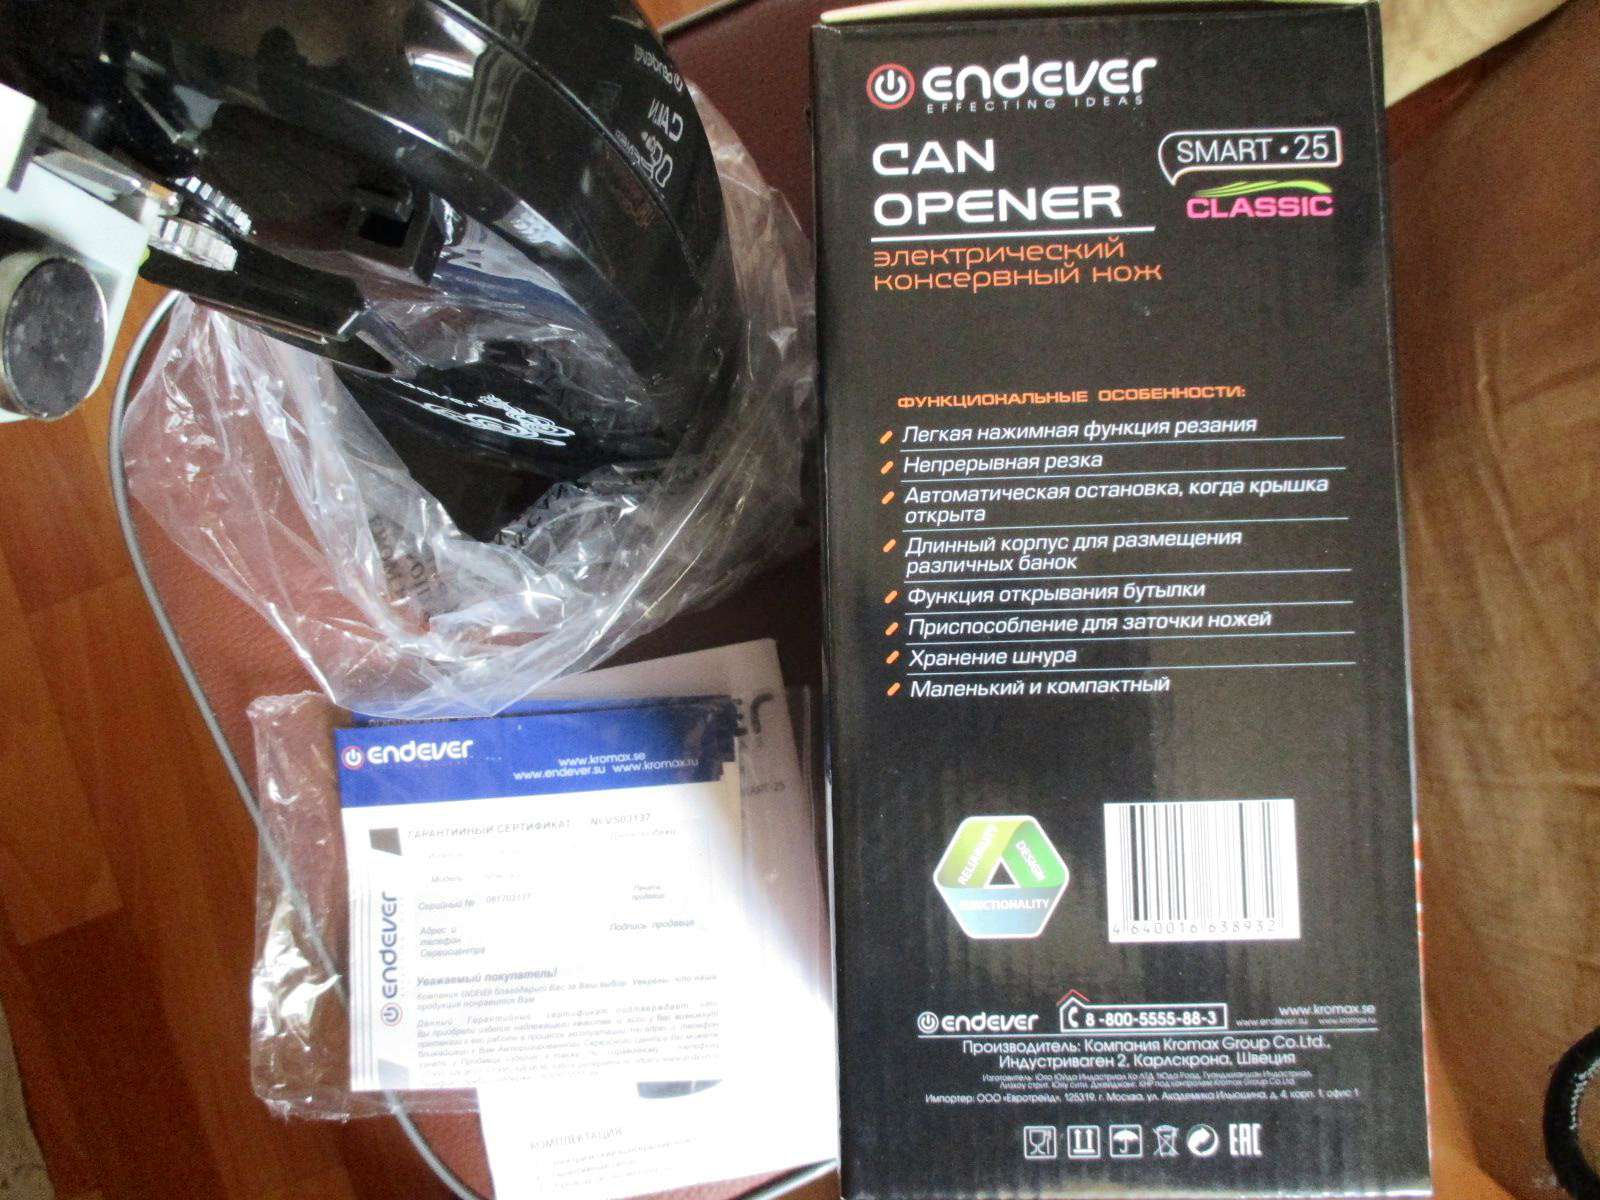 Купить Электрический консервный нож Endever Smart-25 в интернет .